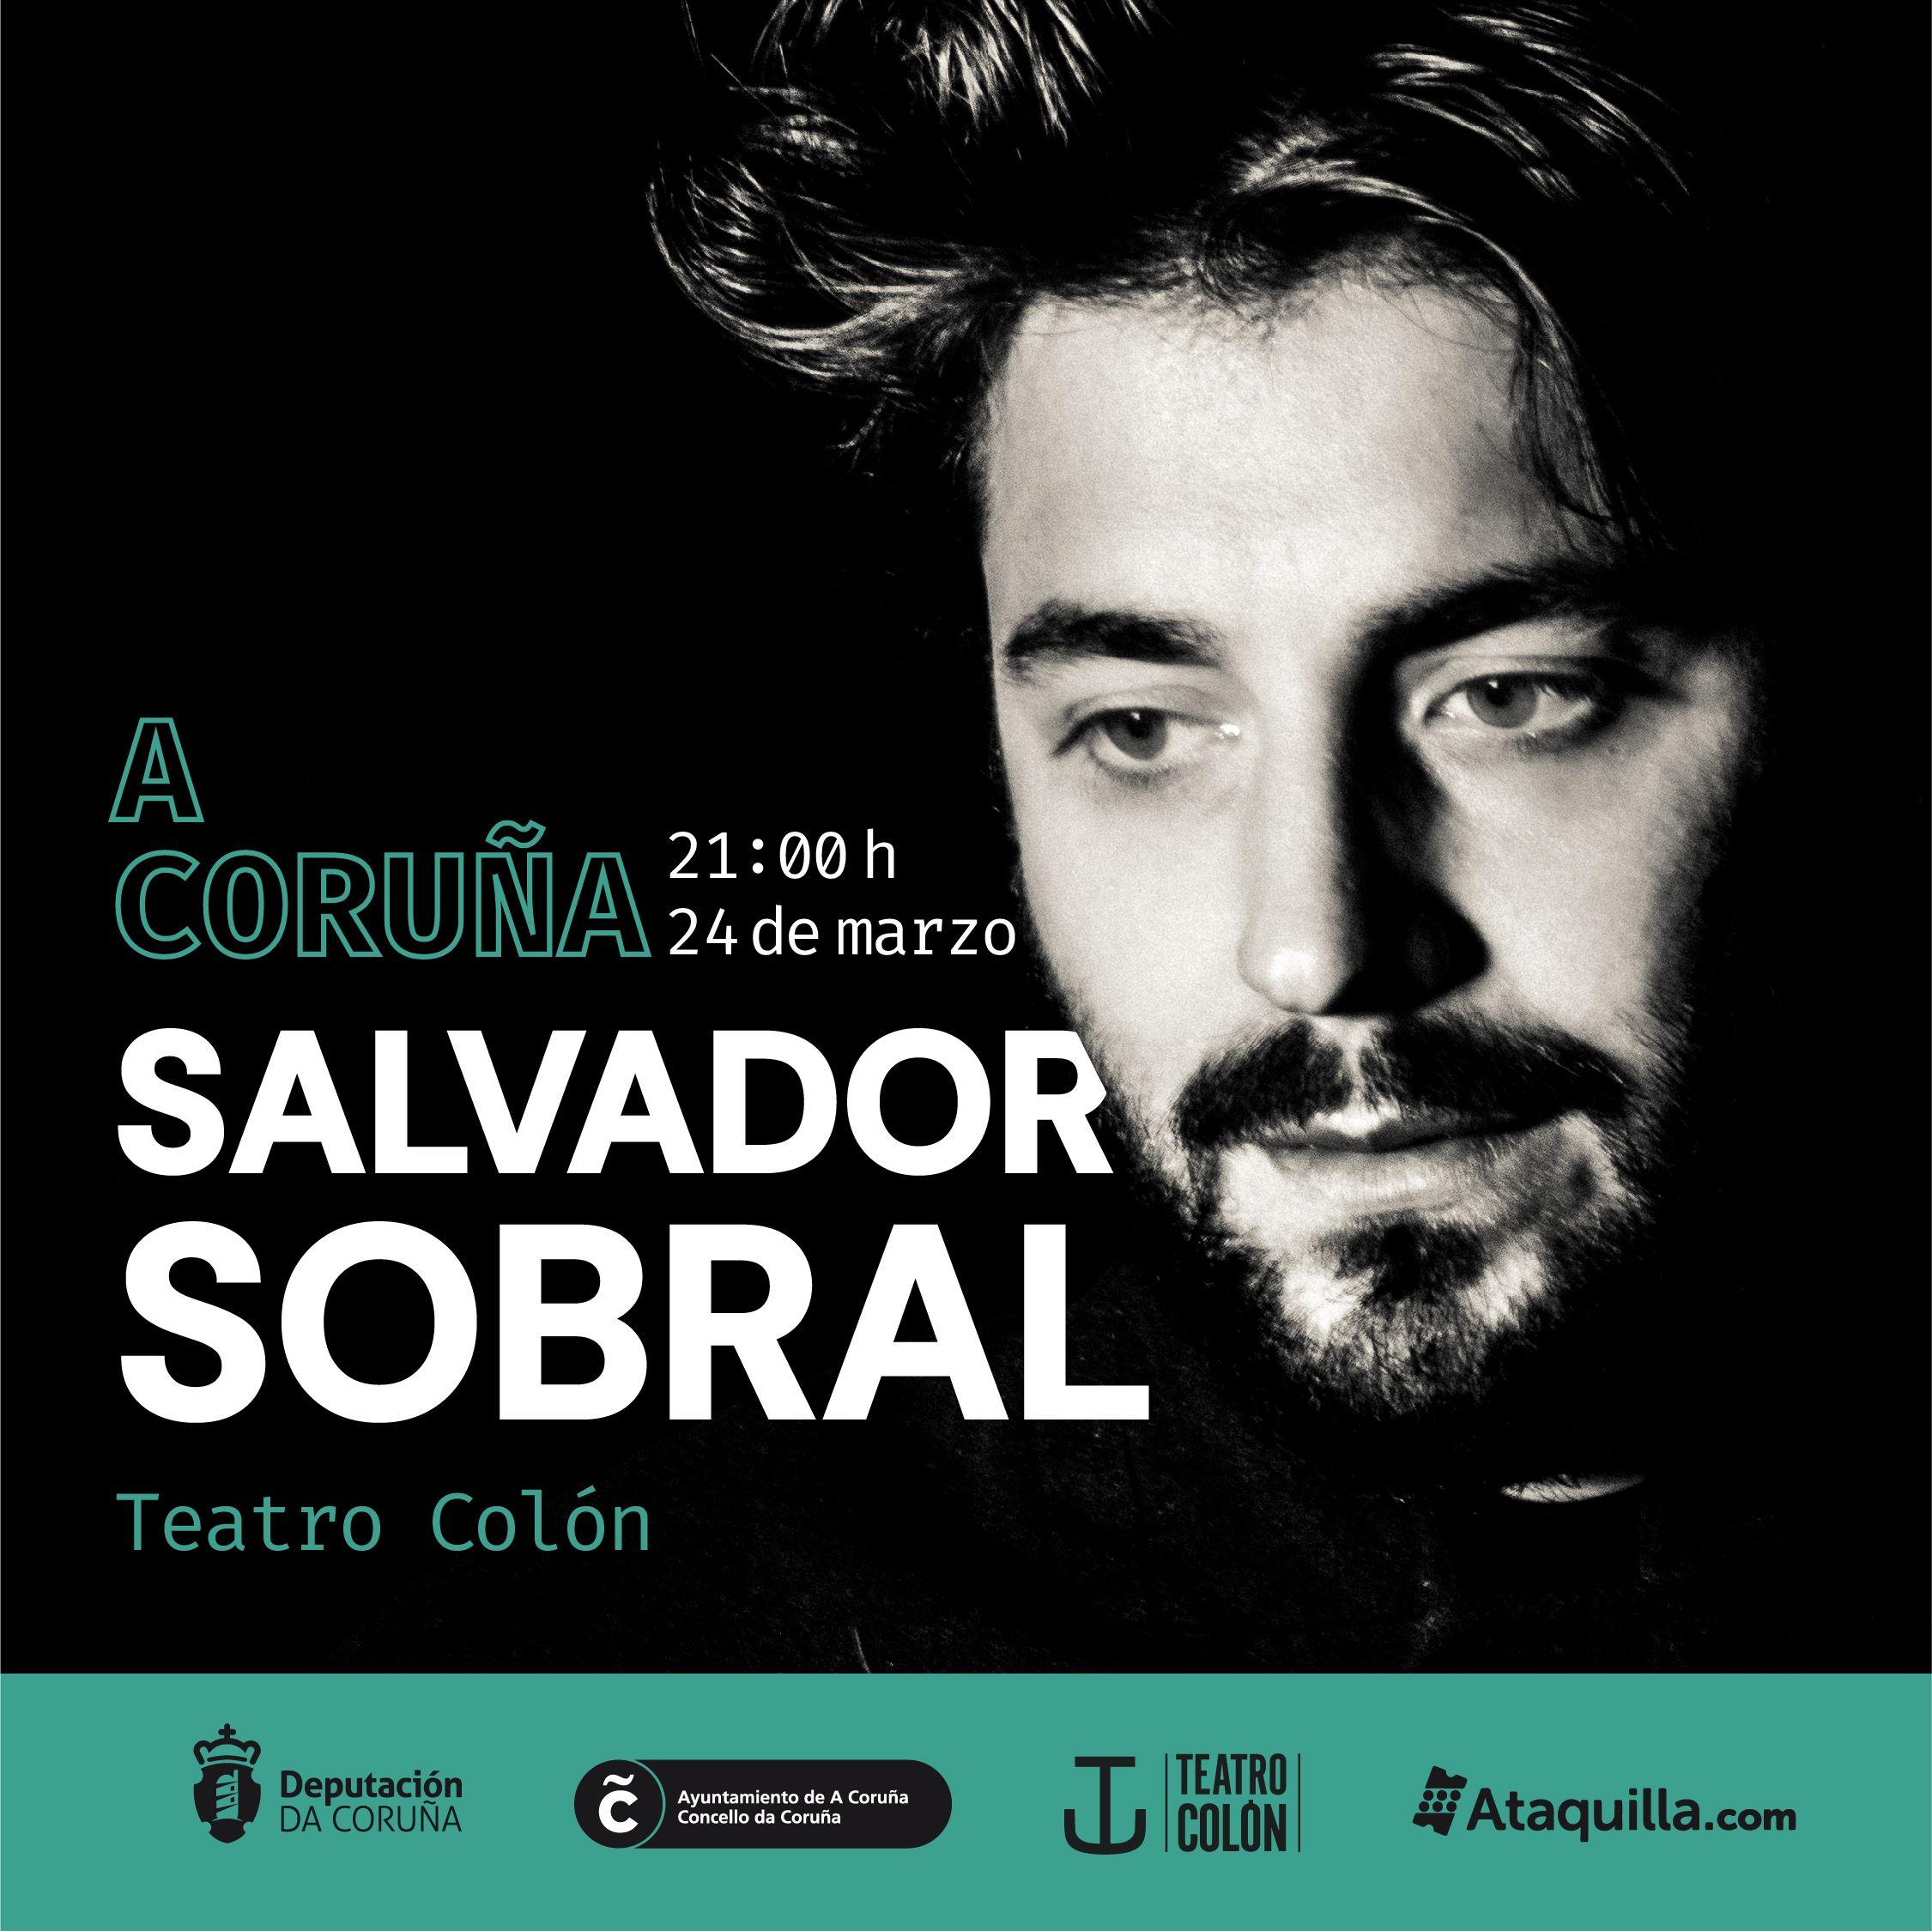 Carteles de los conciertos de Salvador Sobral en A Coruña y Vigo (Cedidas).